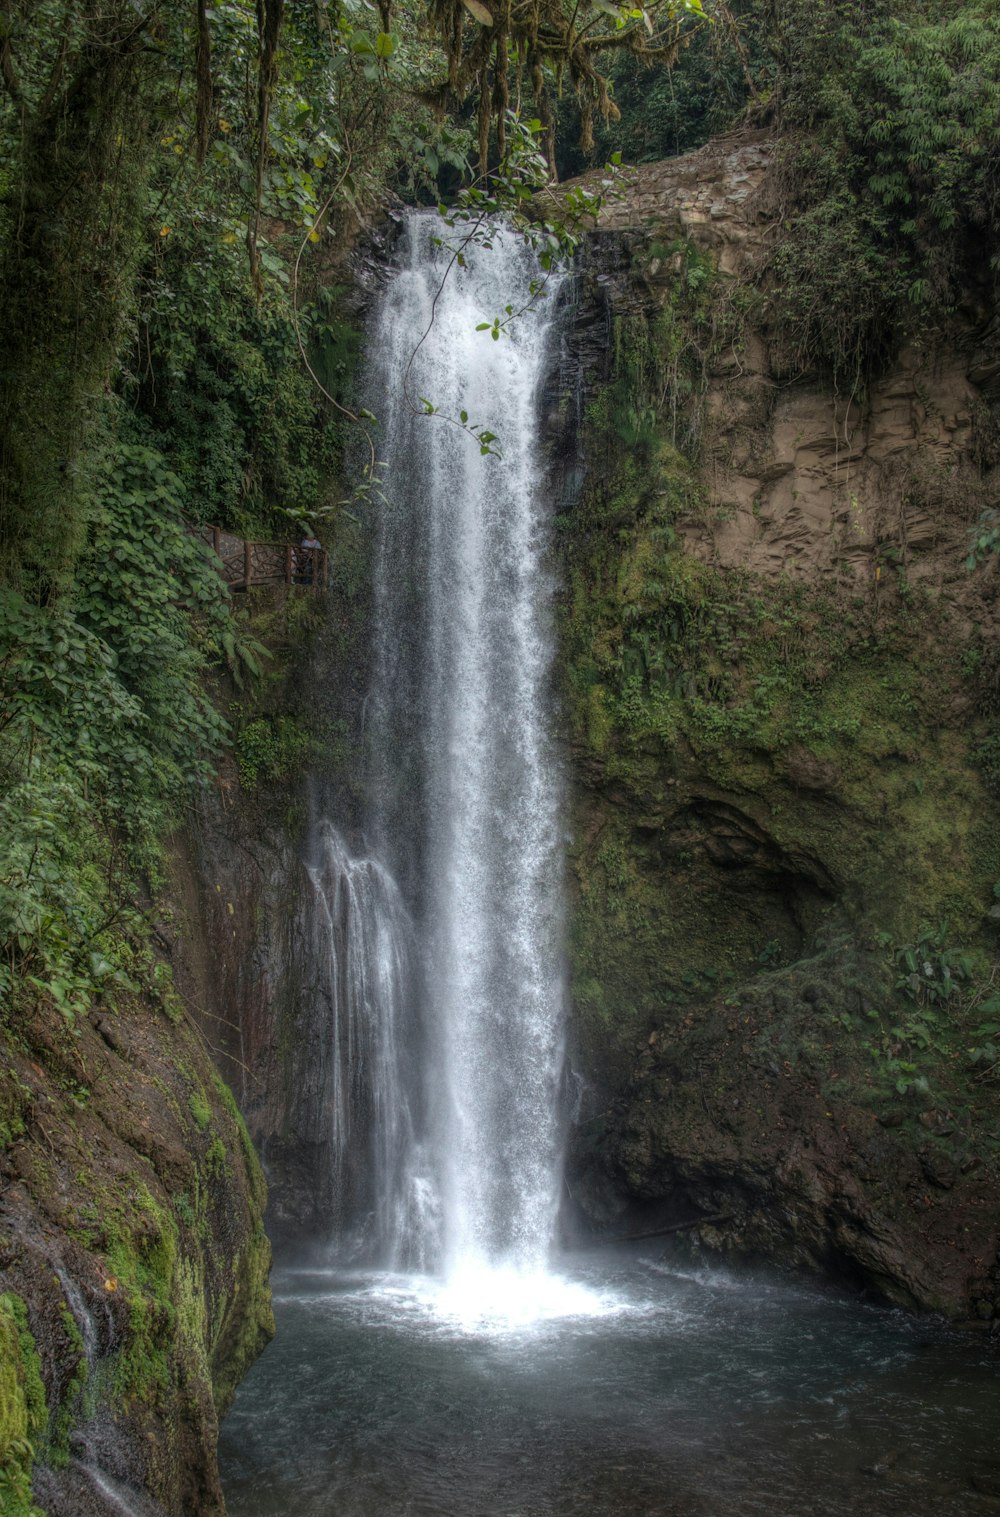 waterfalls view during daytime